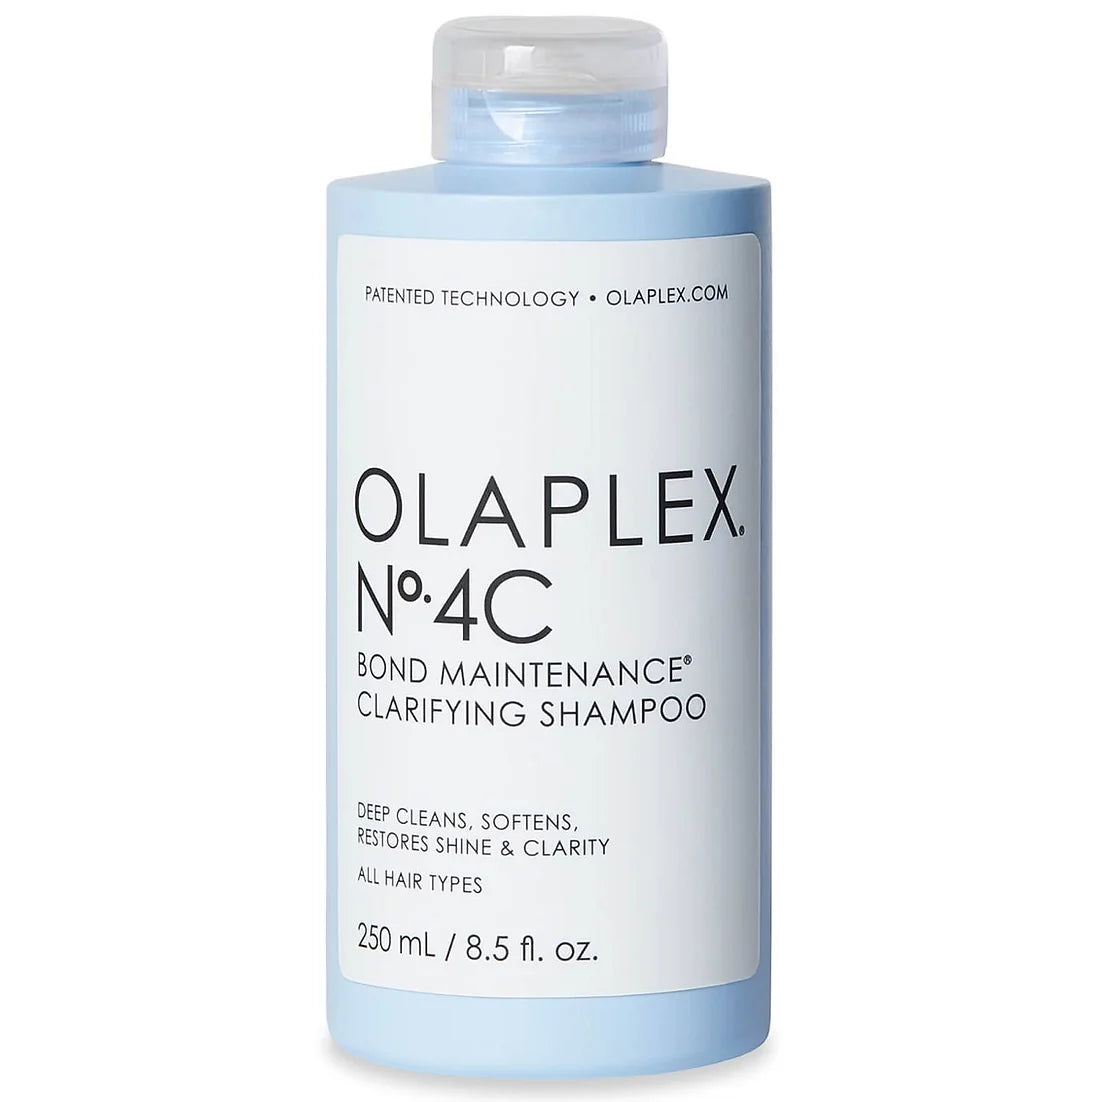 Olaplex No. 4C